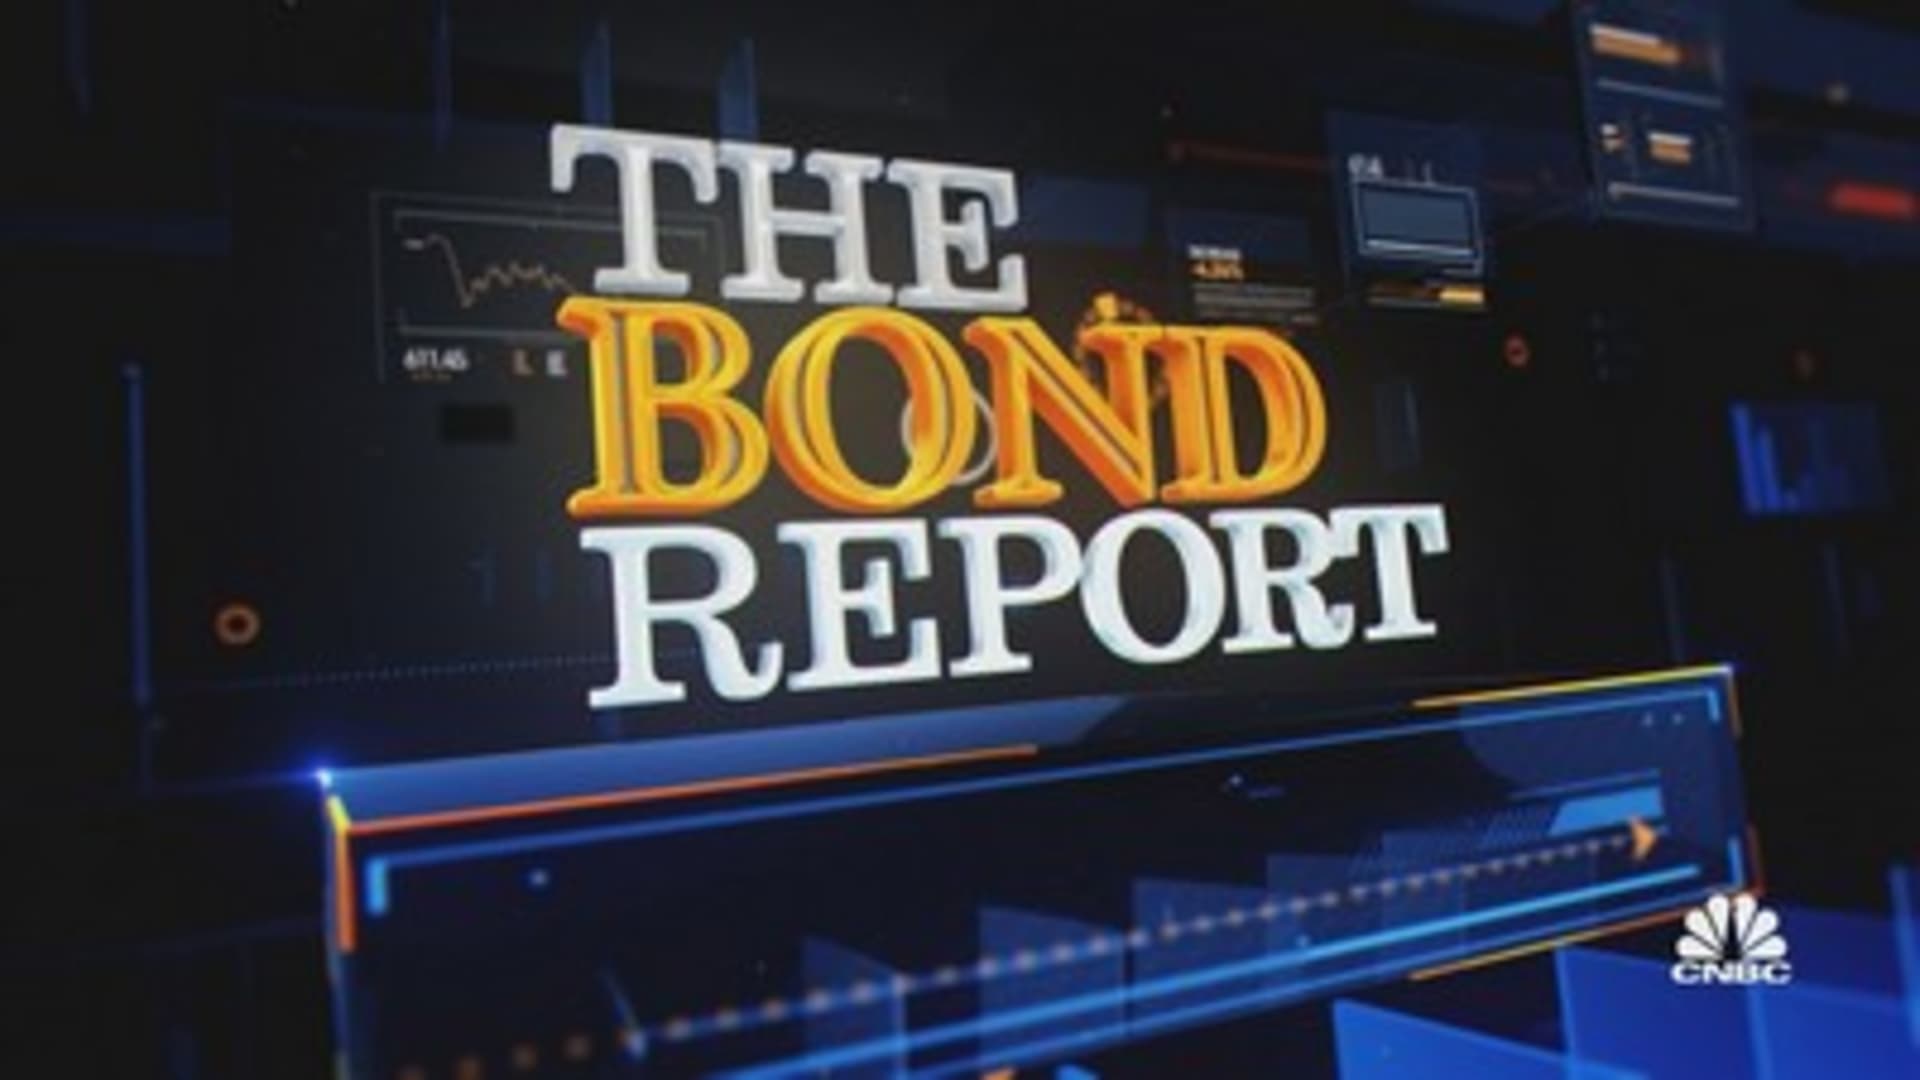 The 3pm Bond Report